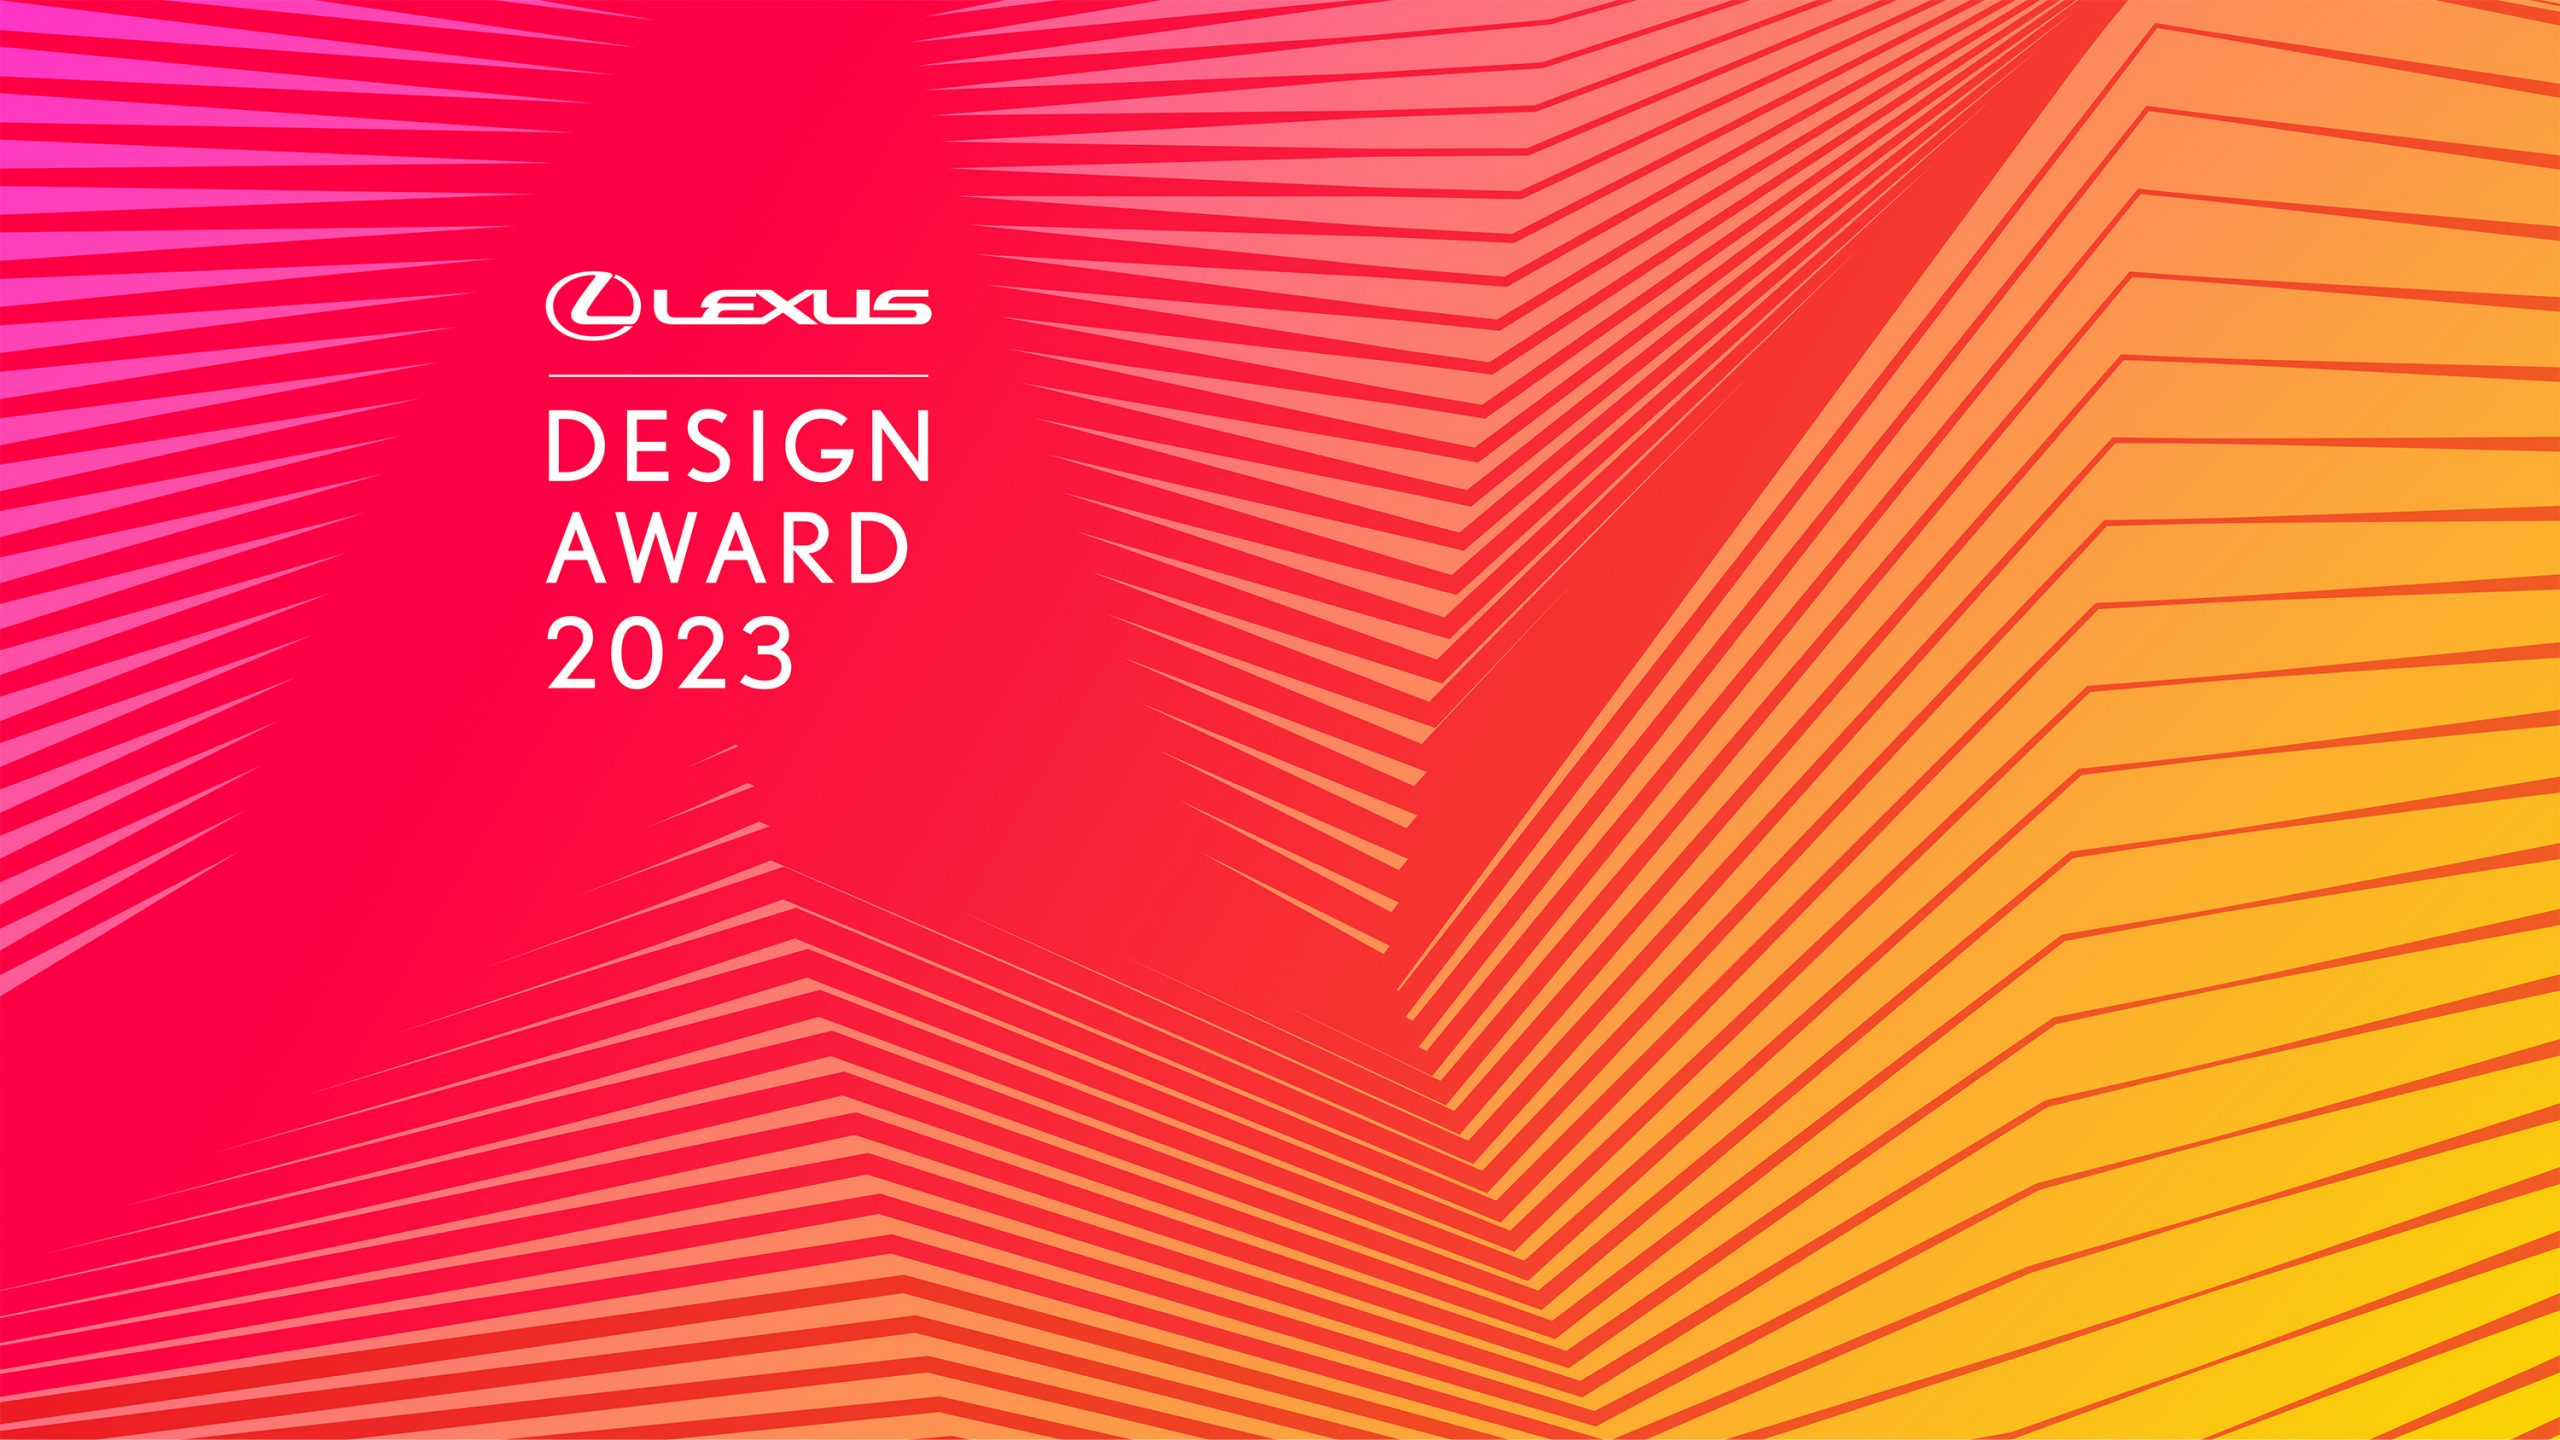 Galería de Vídeo: Lexus Anuncia la Convocatoria de Candidaturas para el Premio de Diseño Lexus 2023